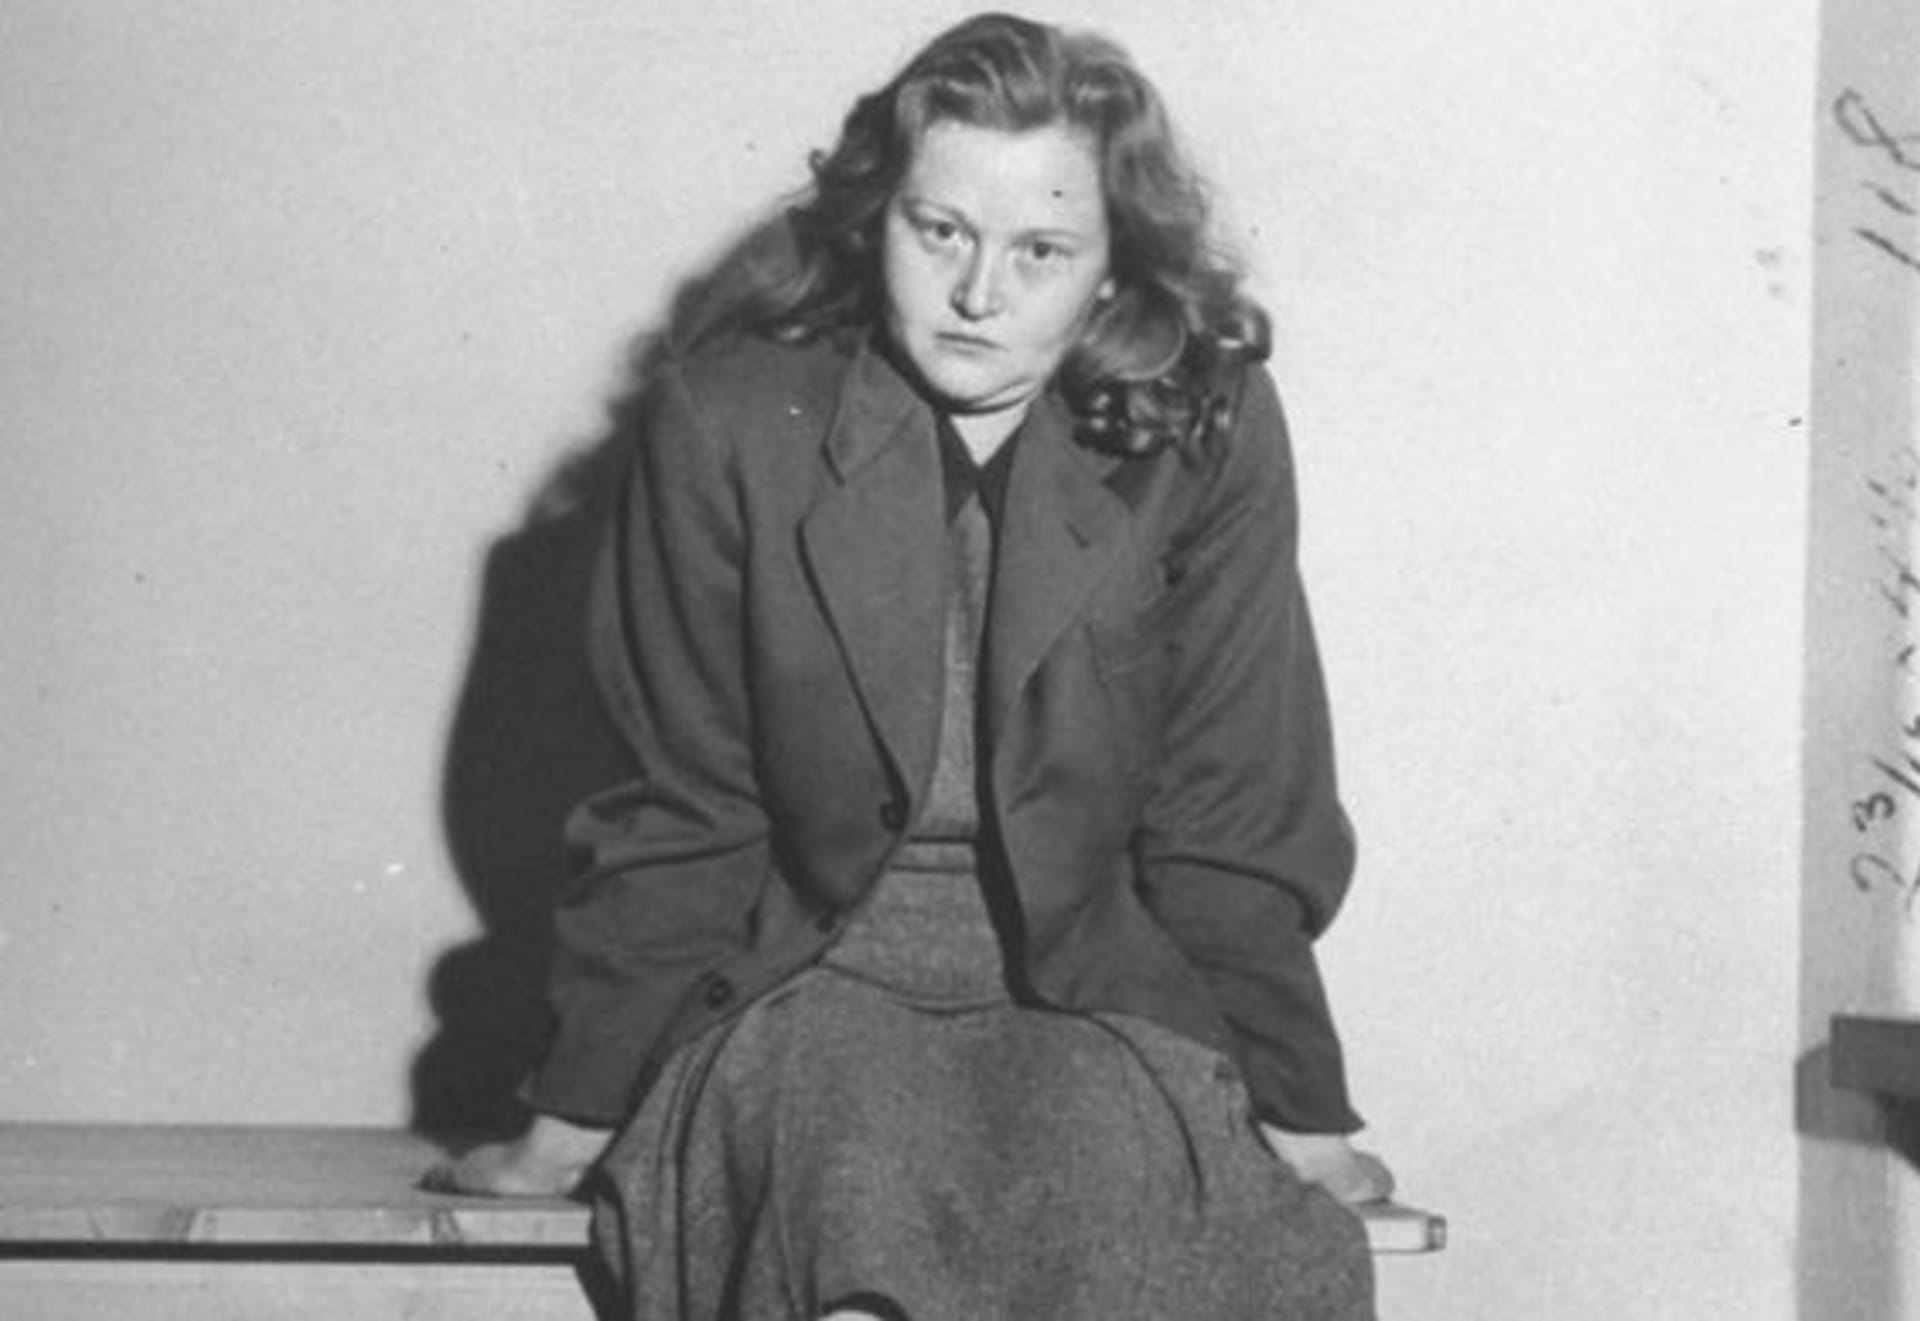 Ilsa Koch